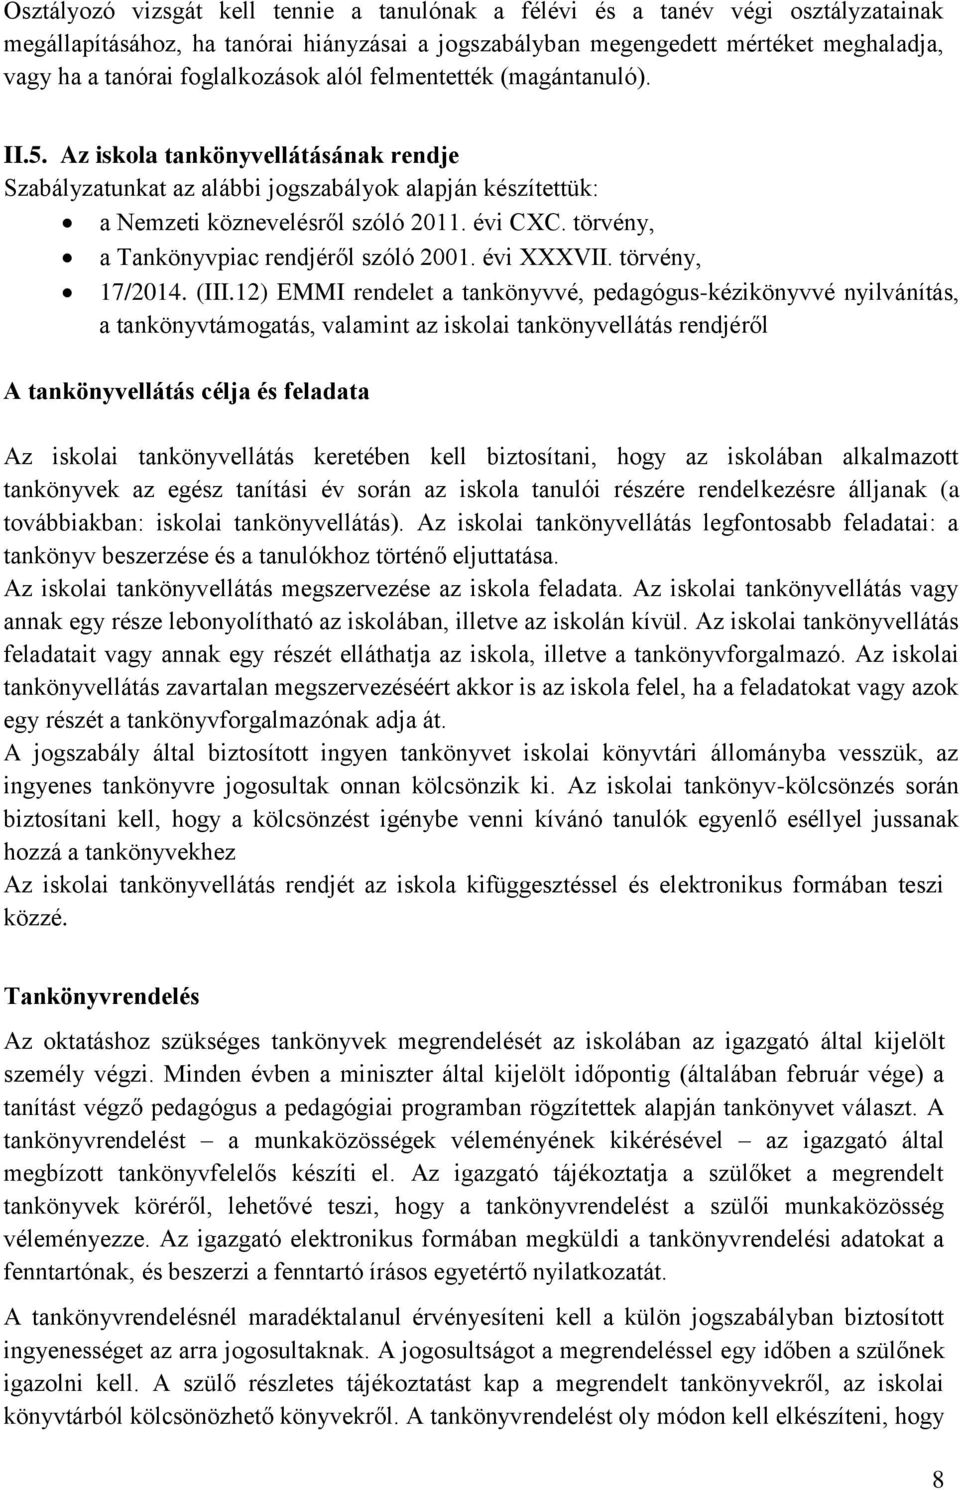 törvény, a Tankönyvpiac rendjéről szóló 2001. évi XXXVII. törvény, 17/2014. (III.